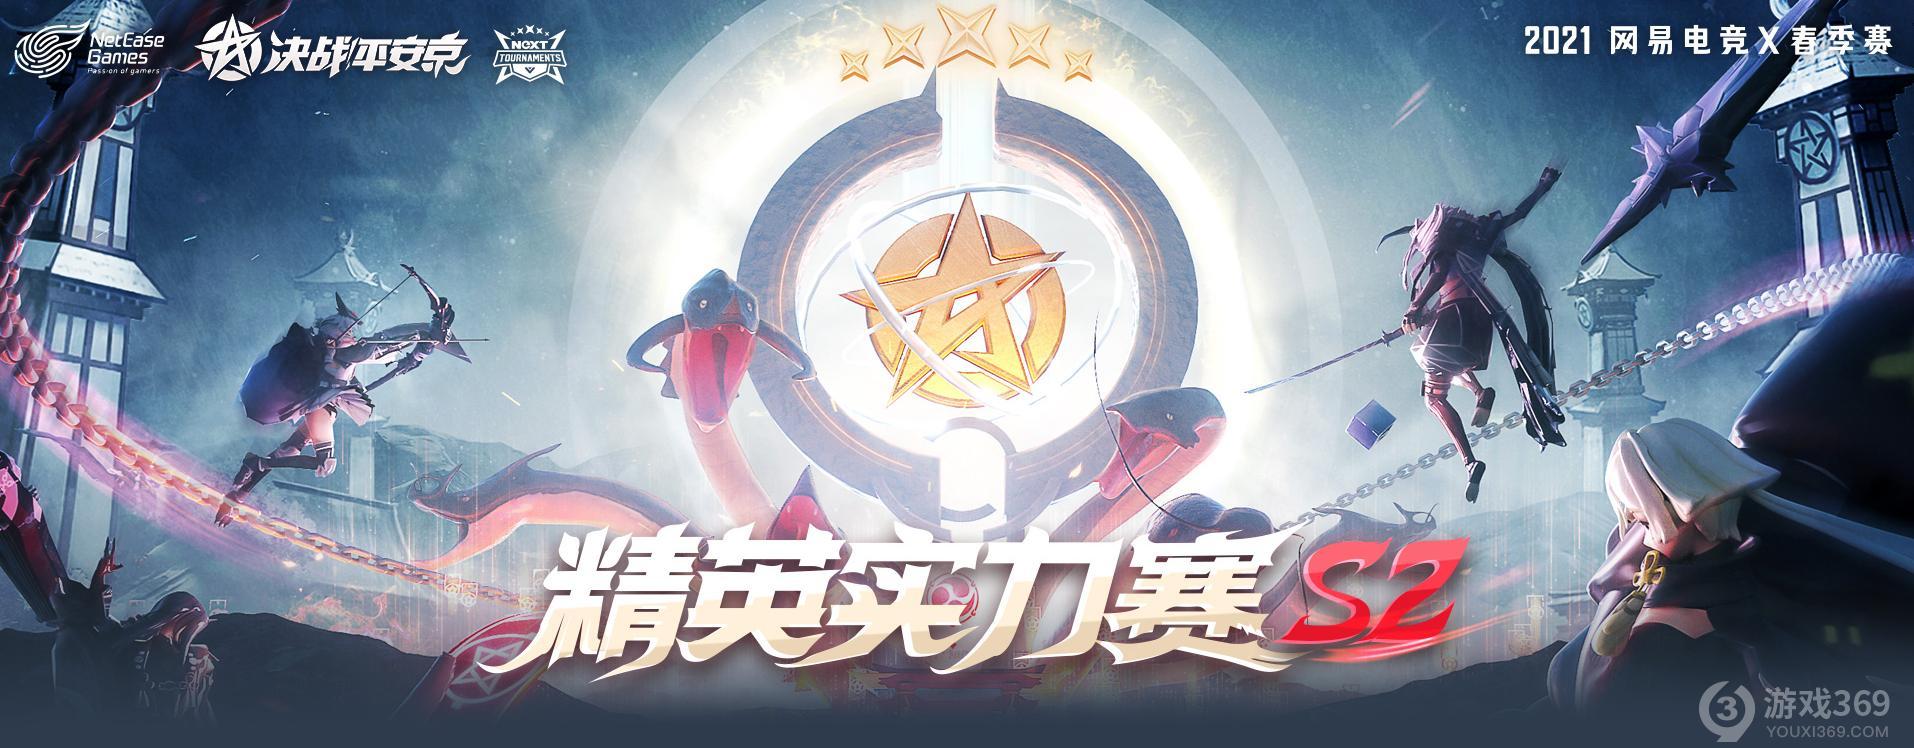 决战平安京图片logo图片